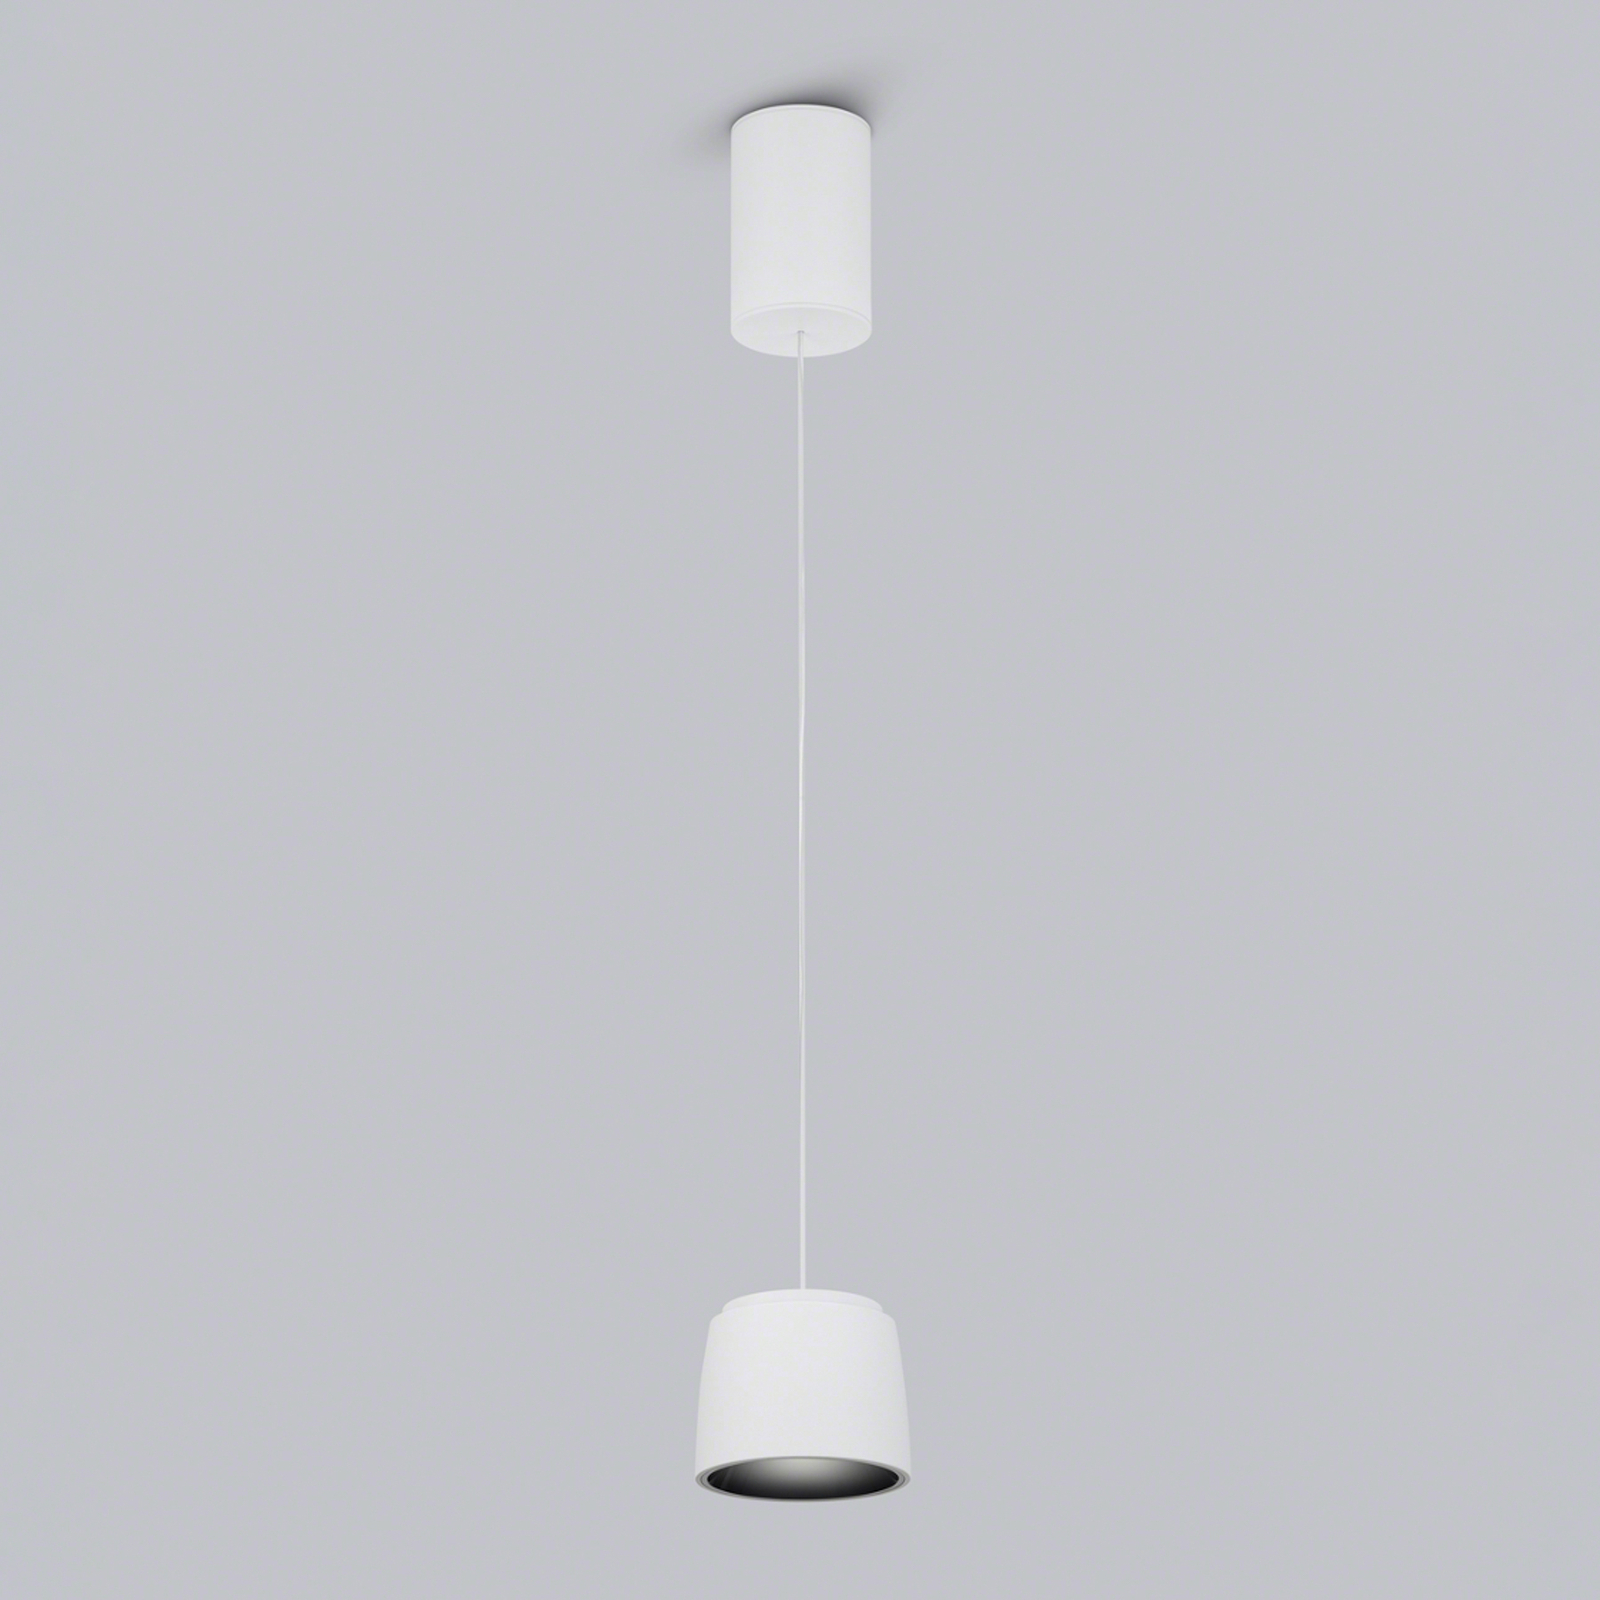 Helestra Ove LED lógó világítás Ø9,5cm 927 fehér